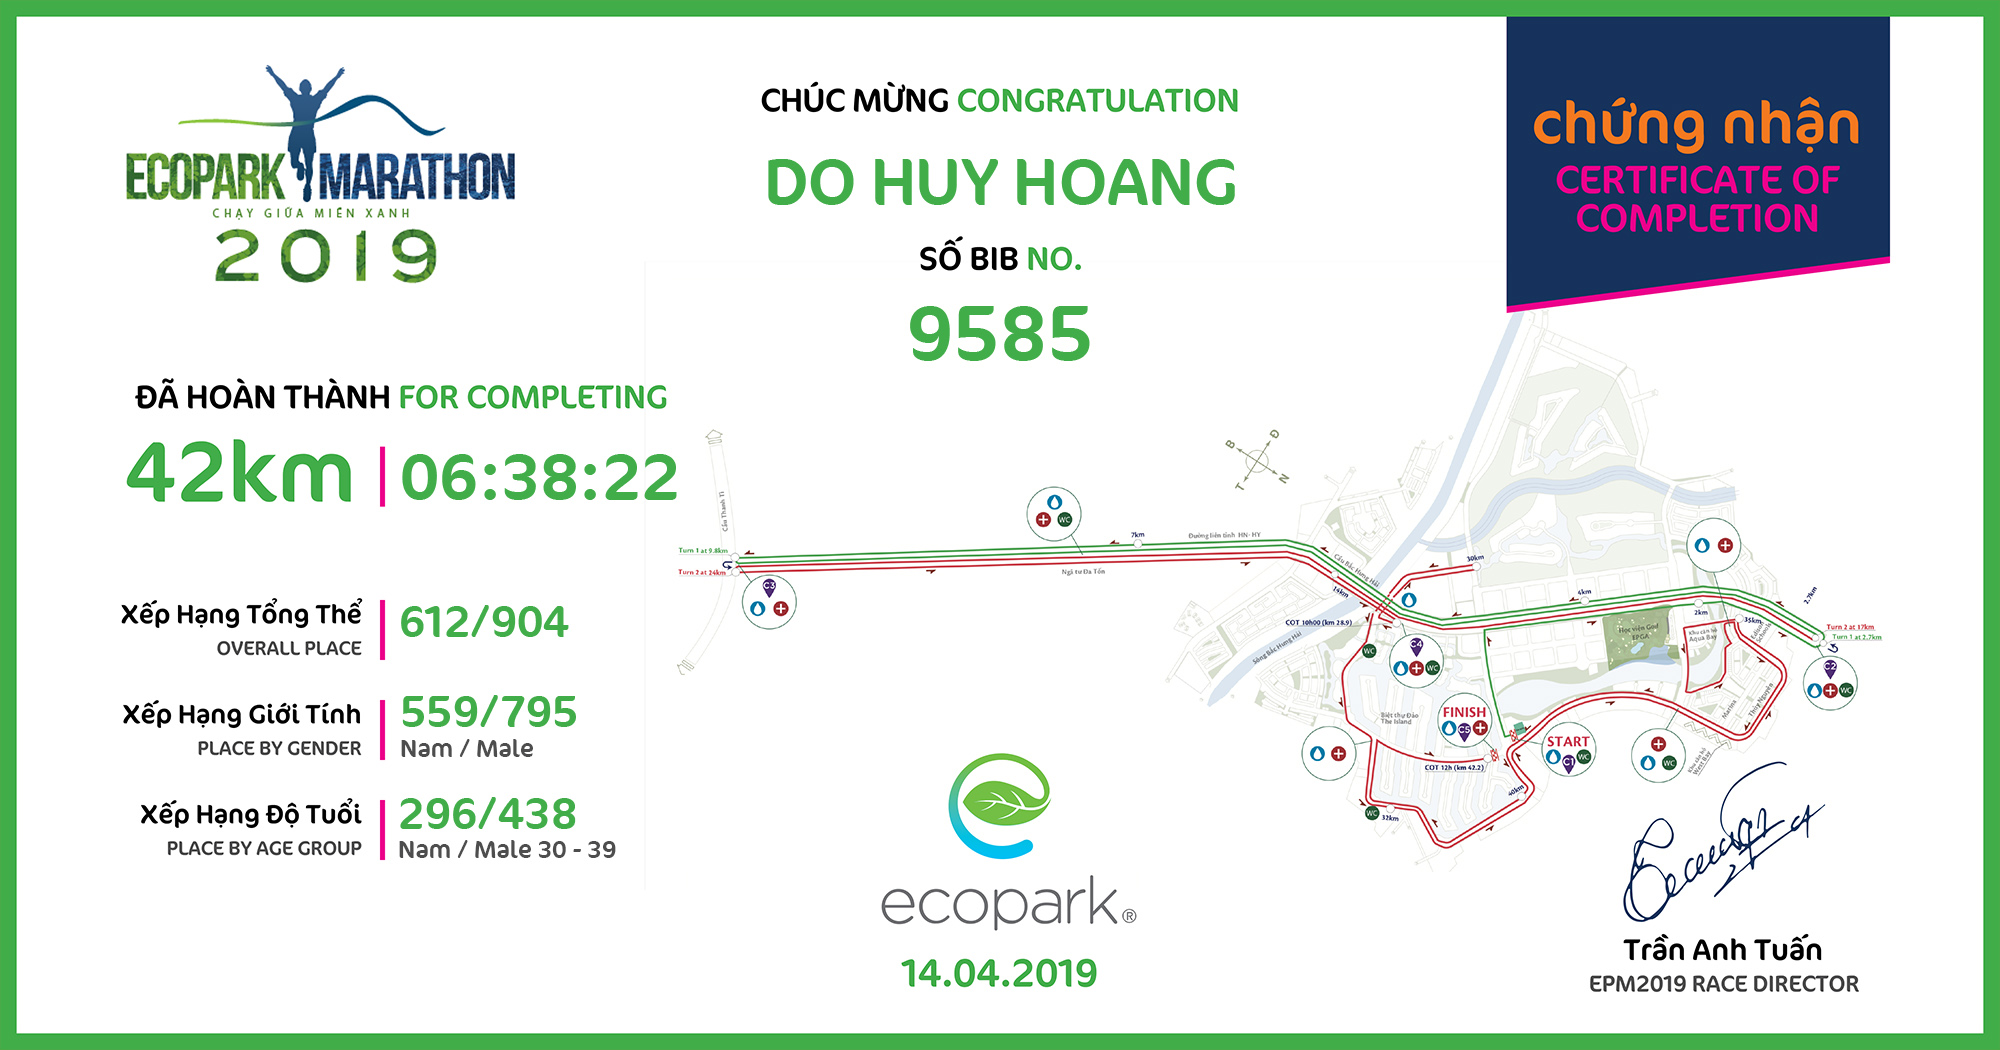 9585 - Do Huy Hoang